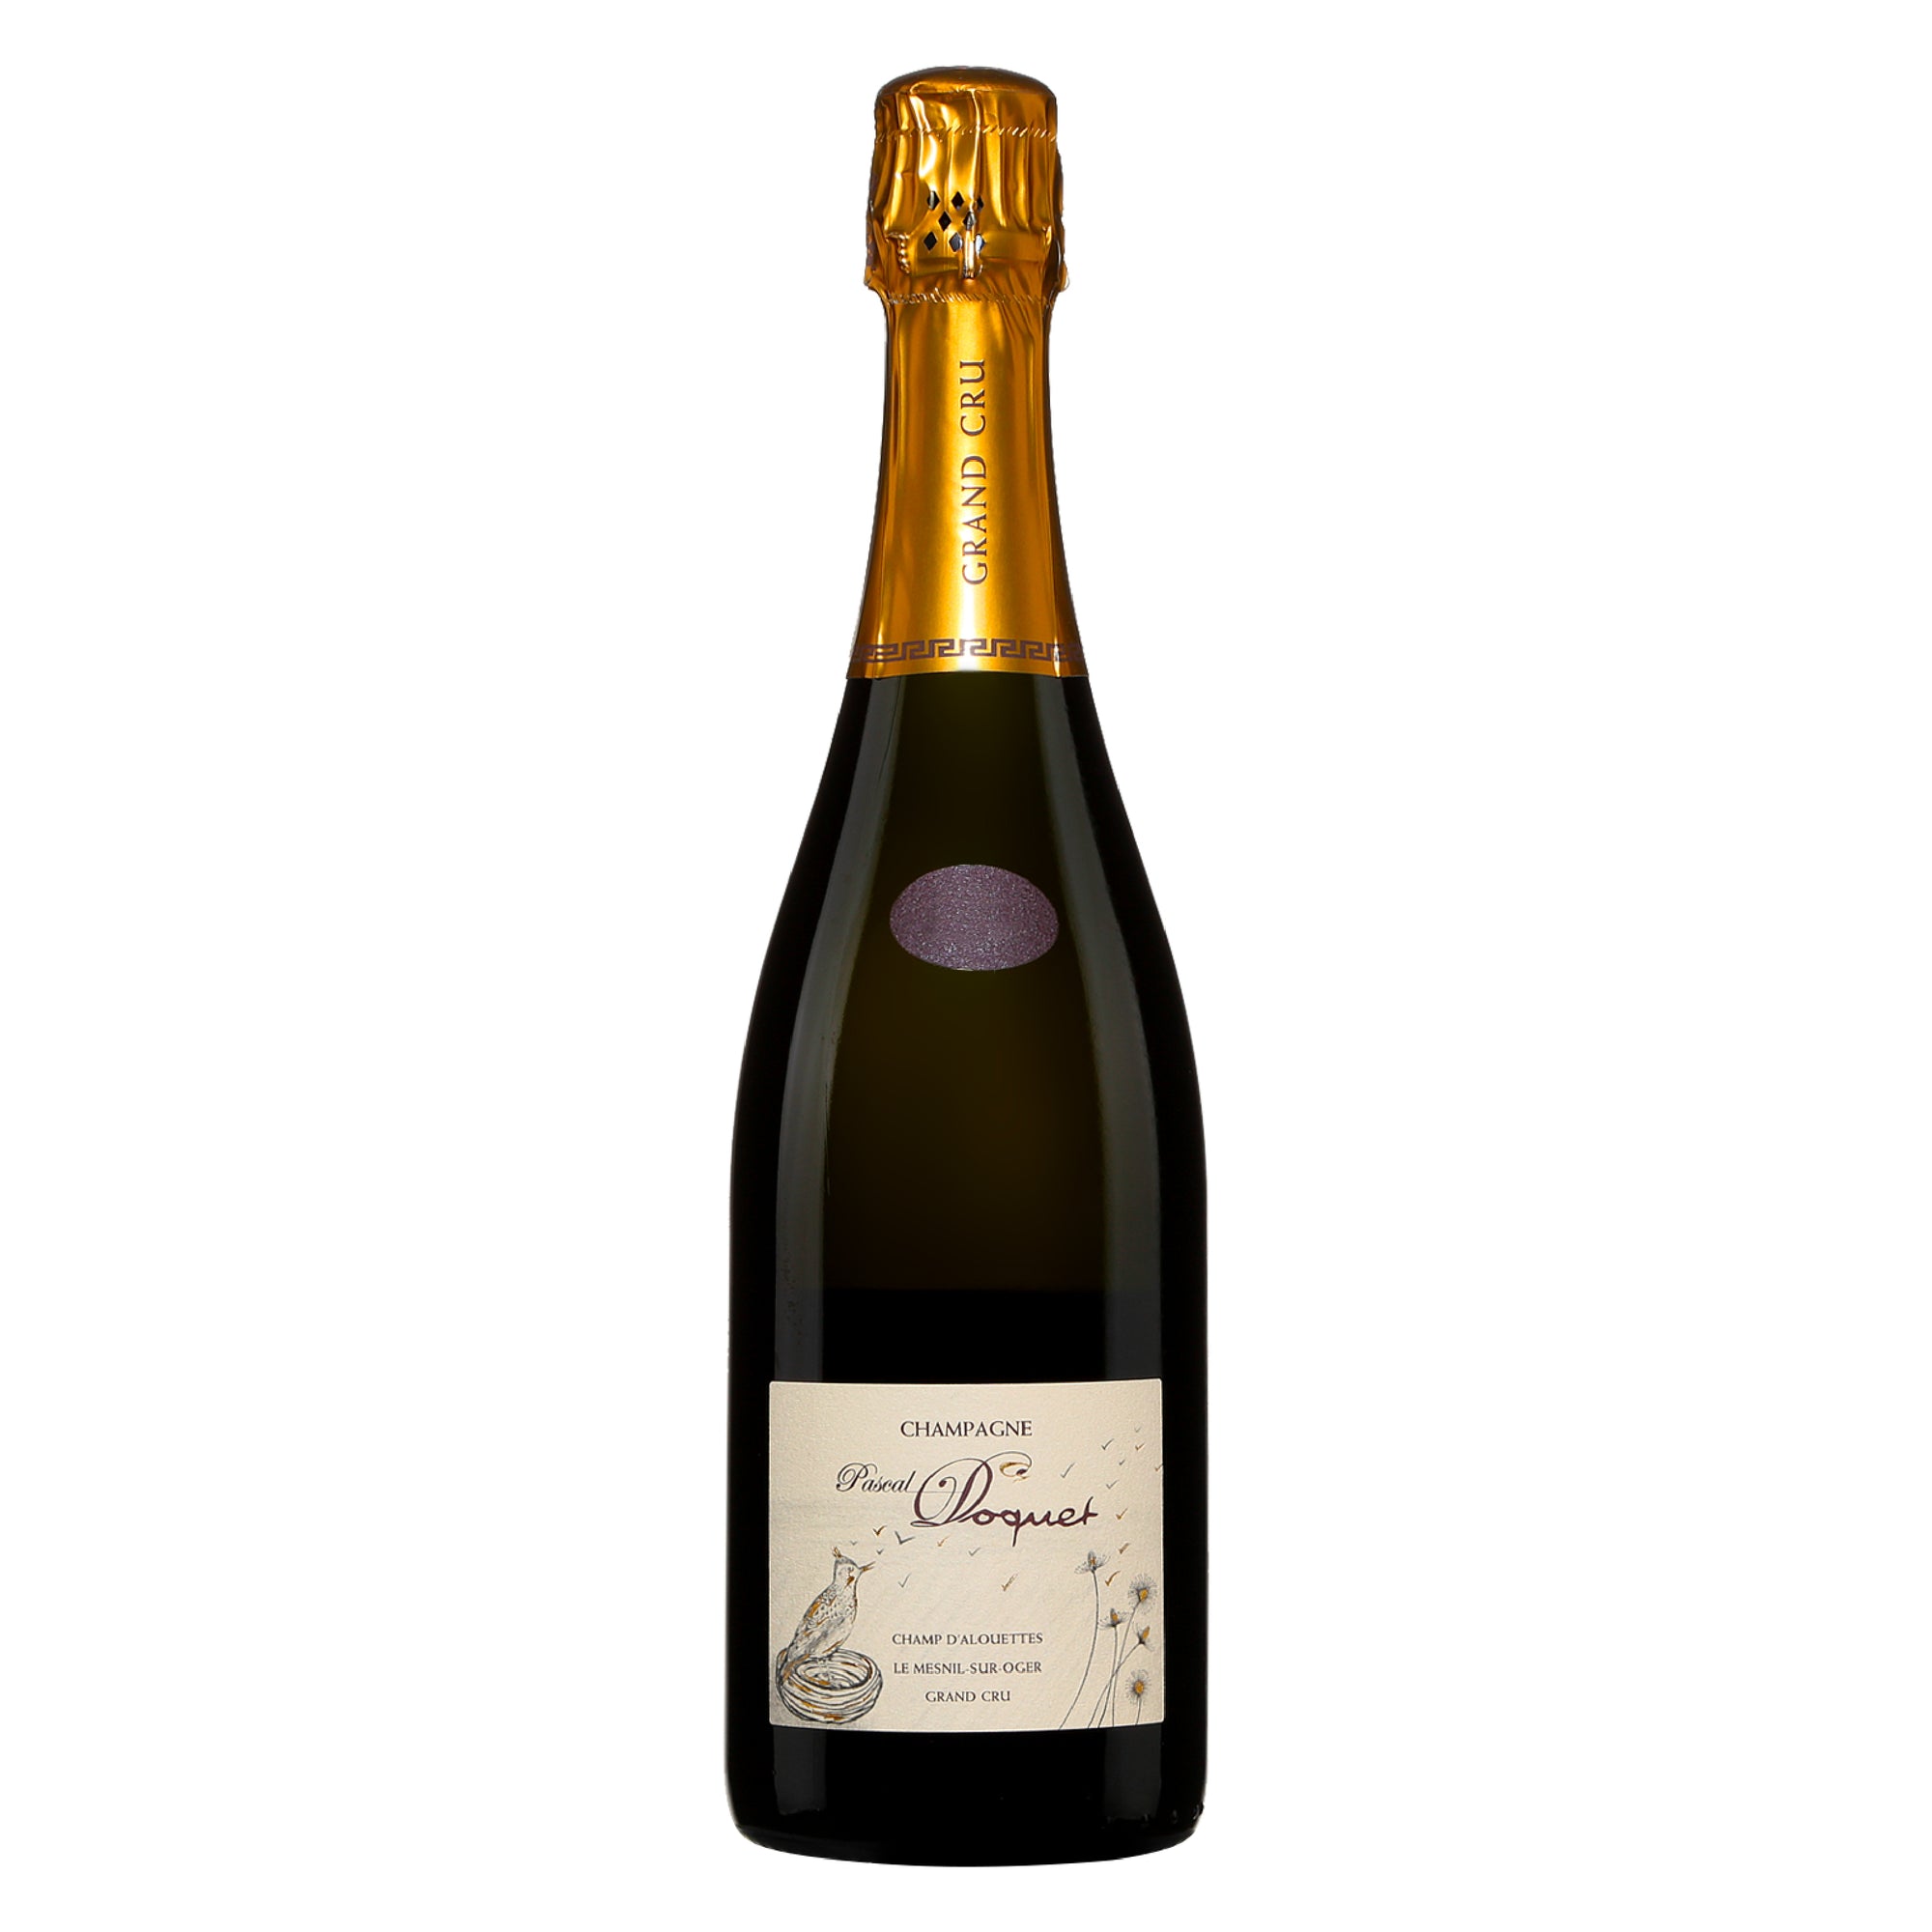 PASCAL DOQUET Champagne Grand Cru Brut "Le Mesnil Sur Oger - Champ d'Alouettes" 2004